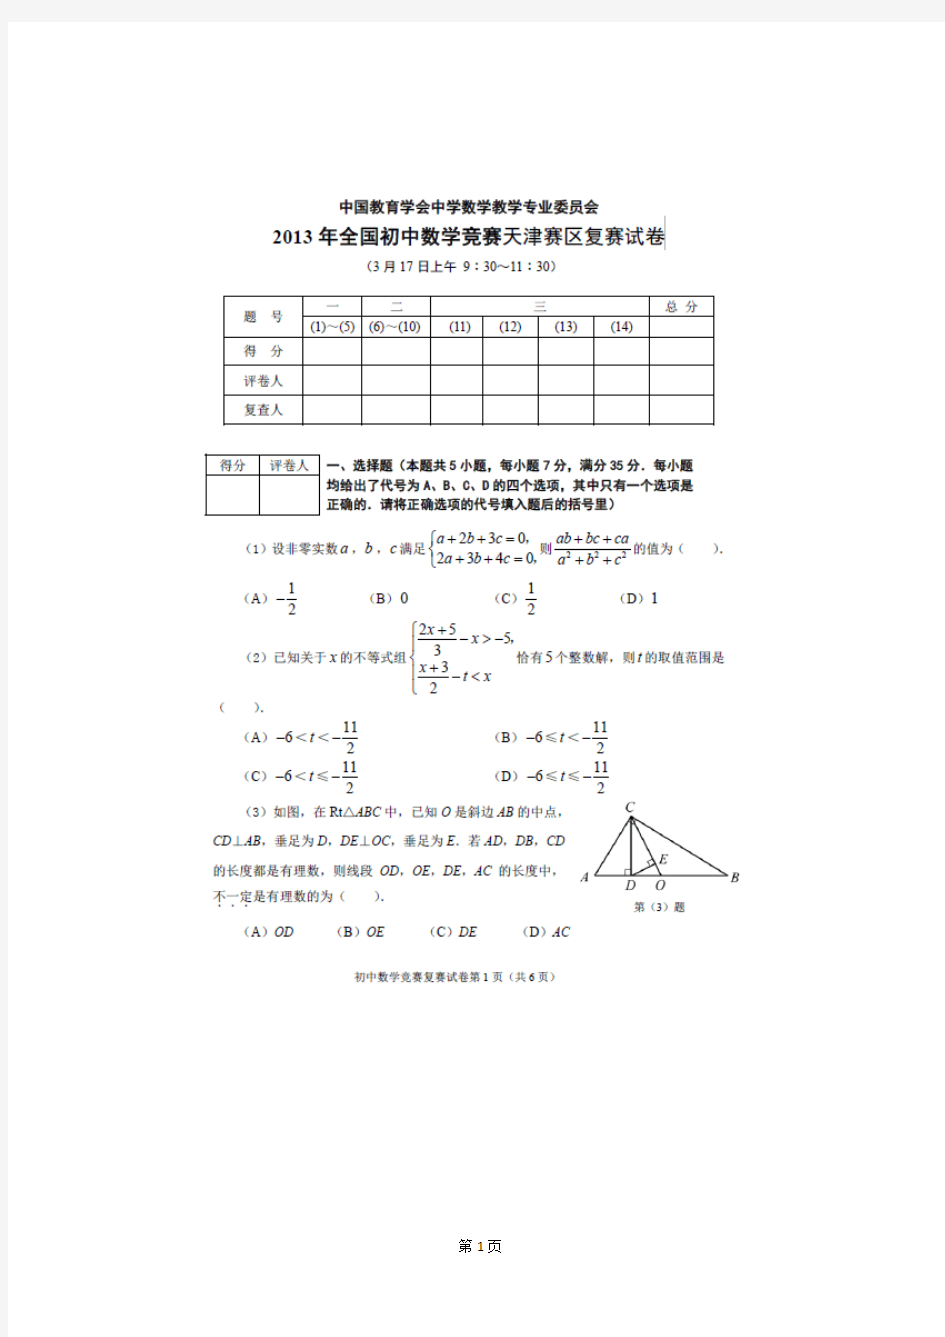 2013年全国初中数学竞赛天津赛区复赛试卷